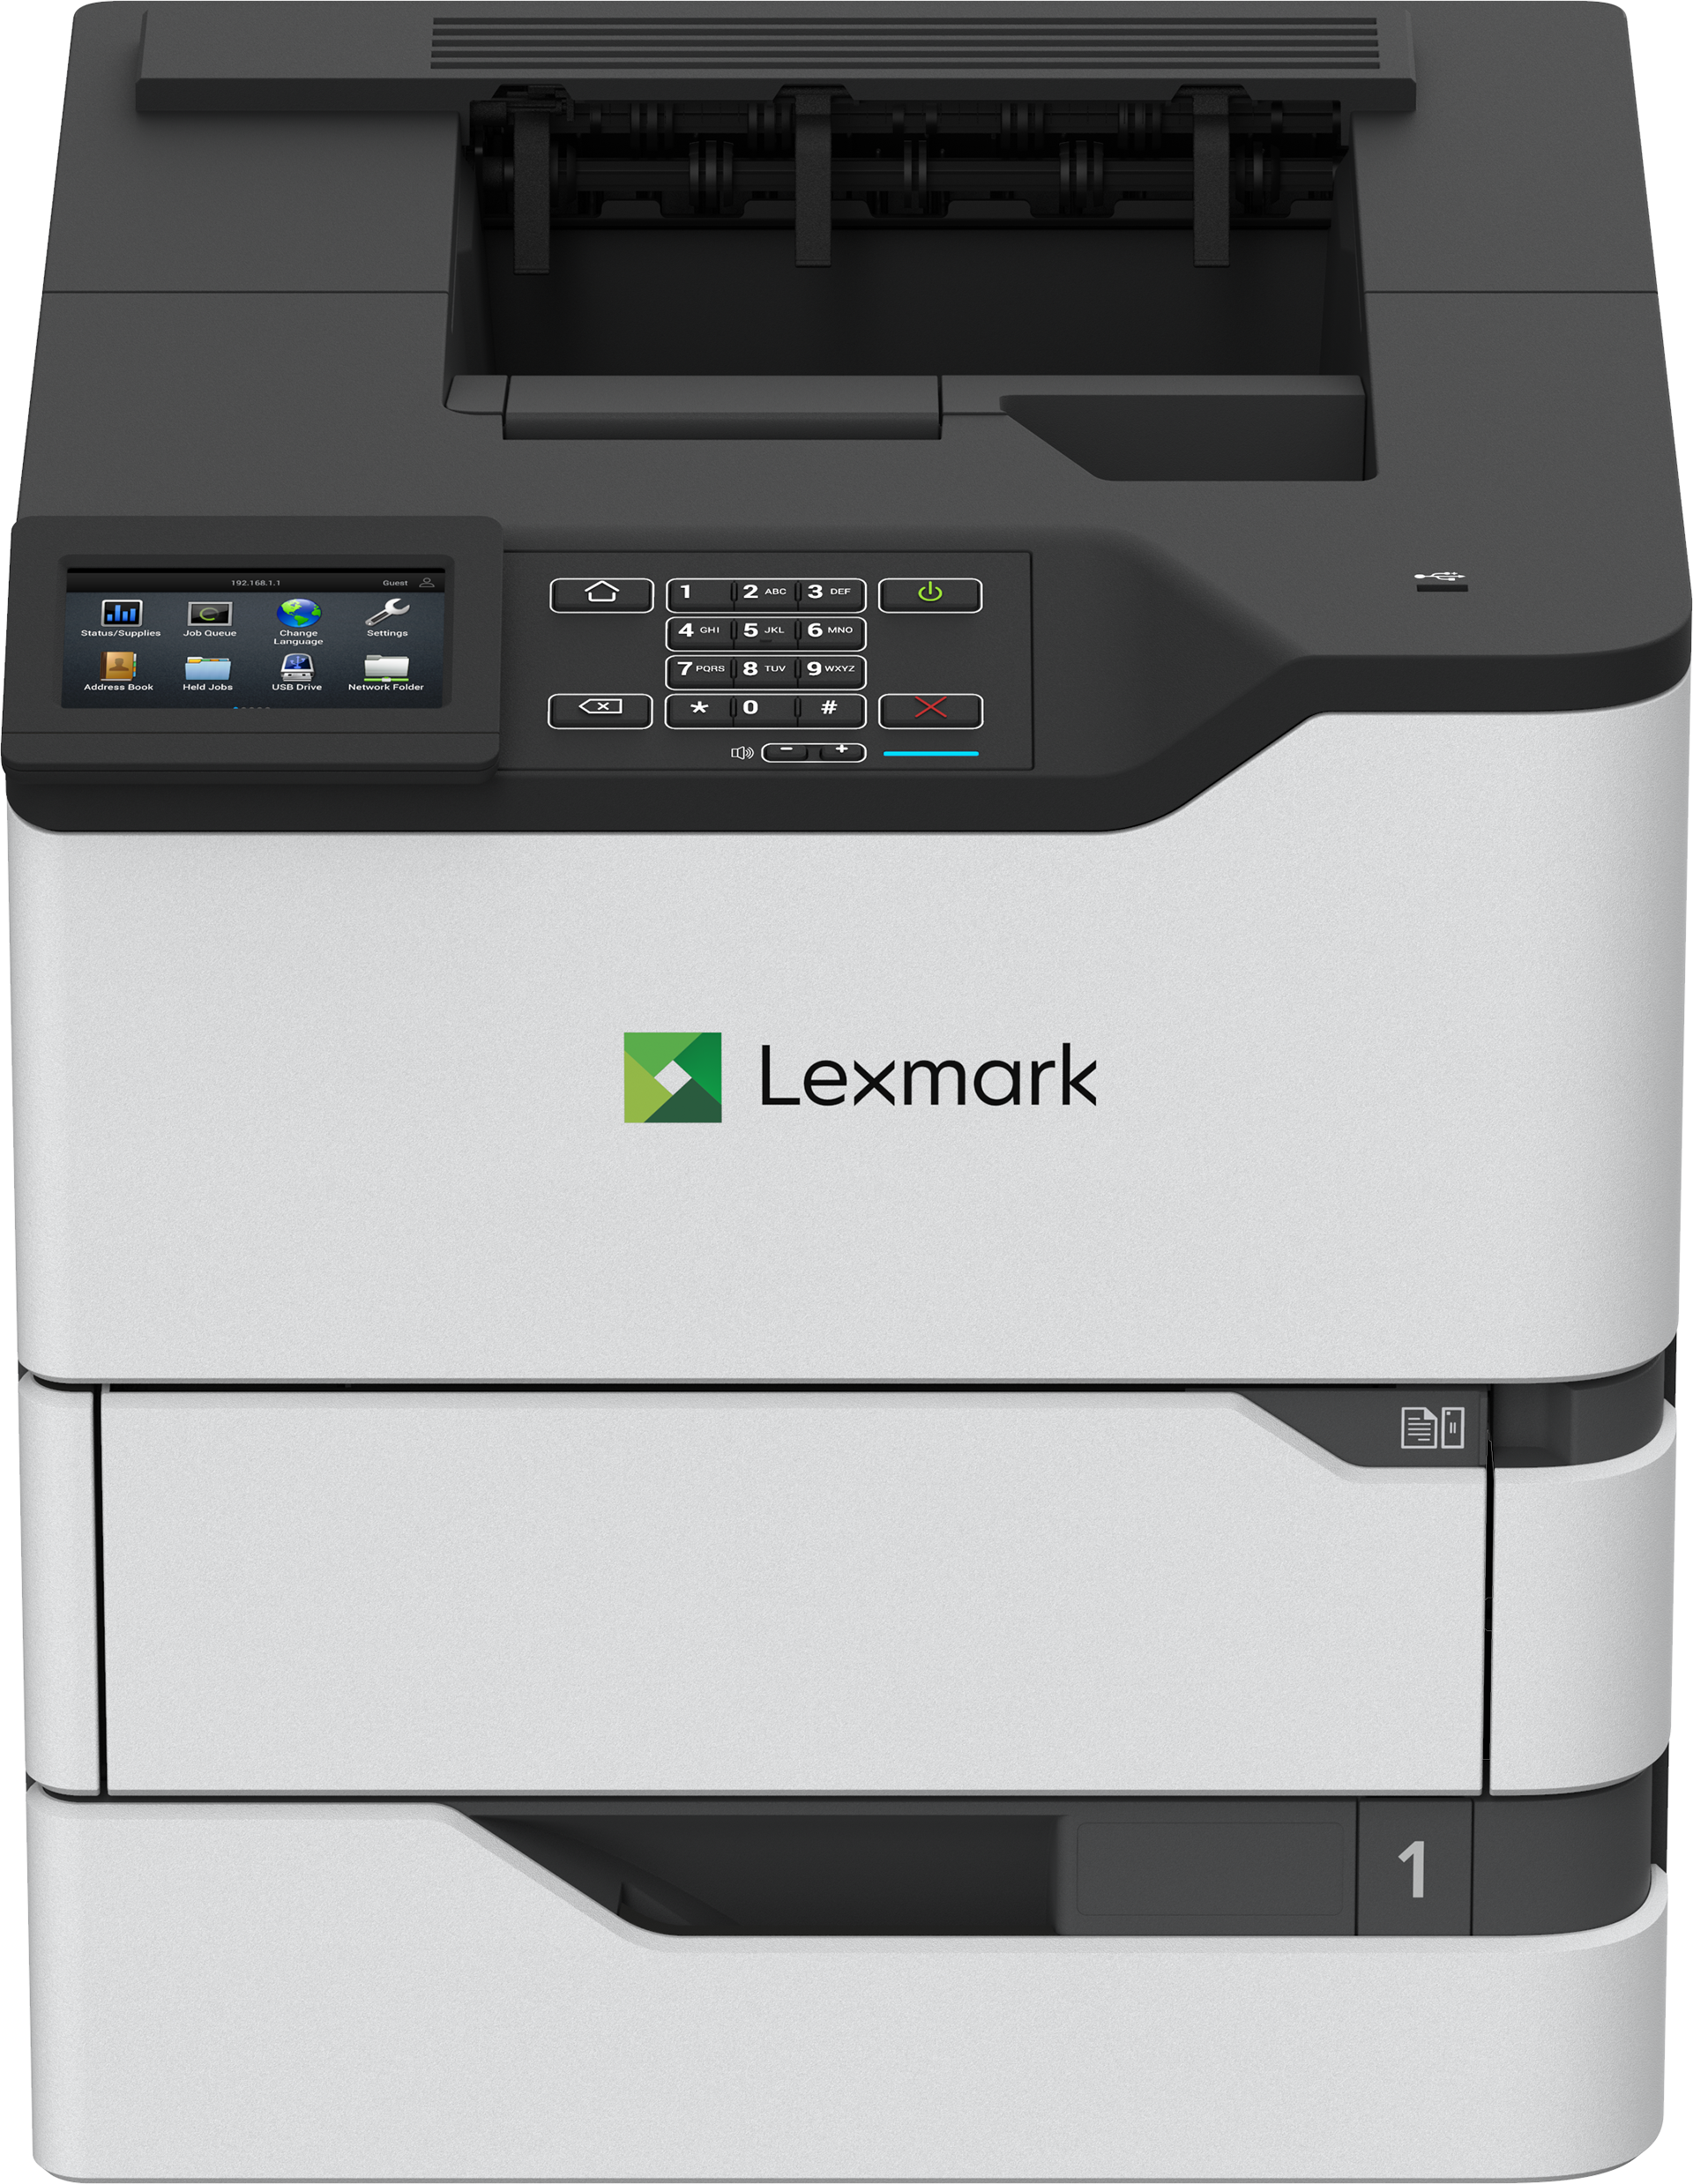 Принтеры lexmark купить. Принтер Lexmark ms823dn. Принтер Lexmark ms825dn. Принтер Lexmark ms821dn. Принтер Lexmark e352dn.